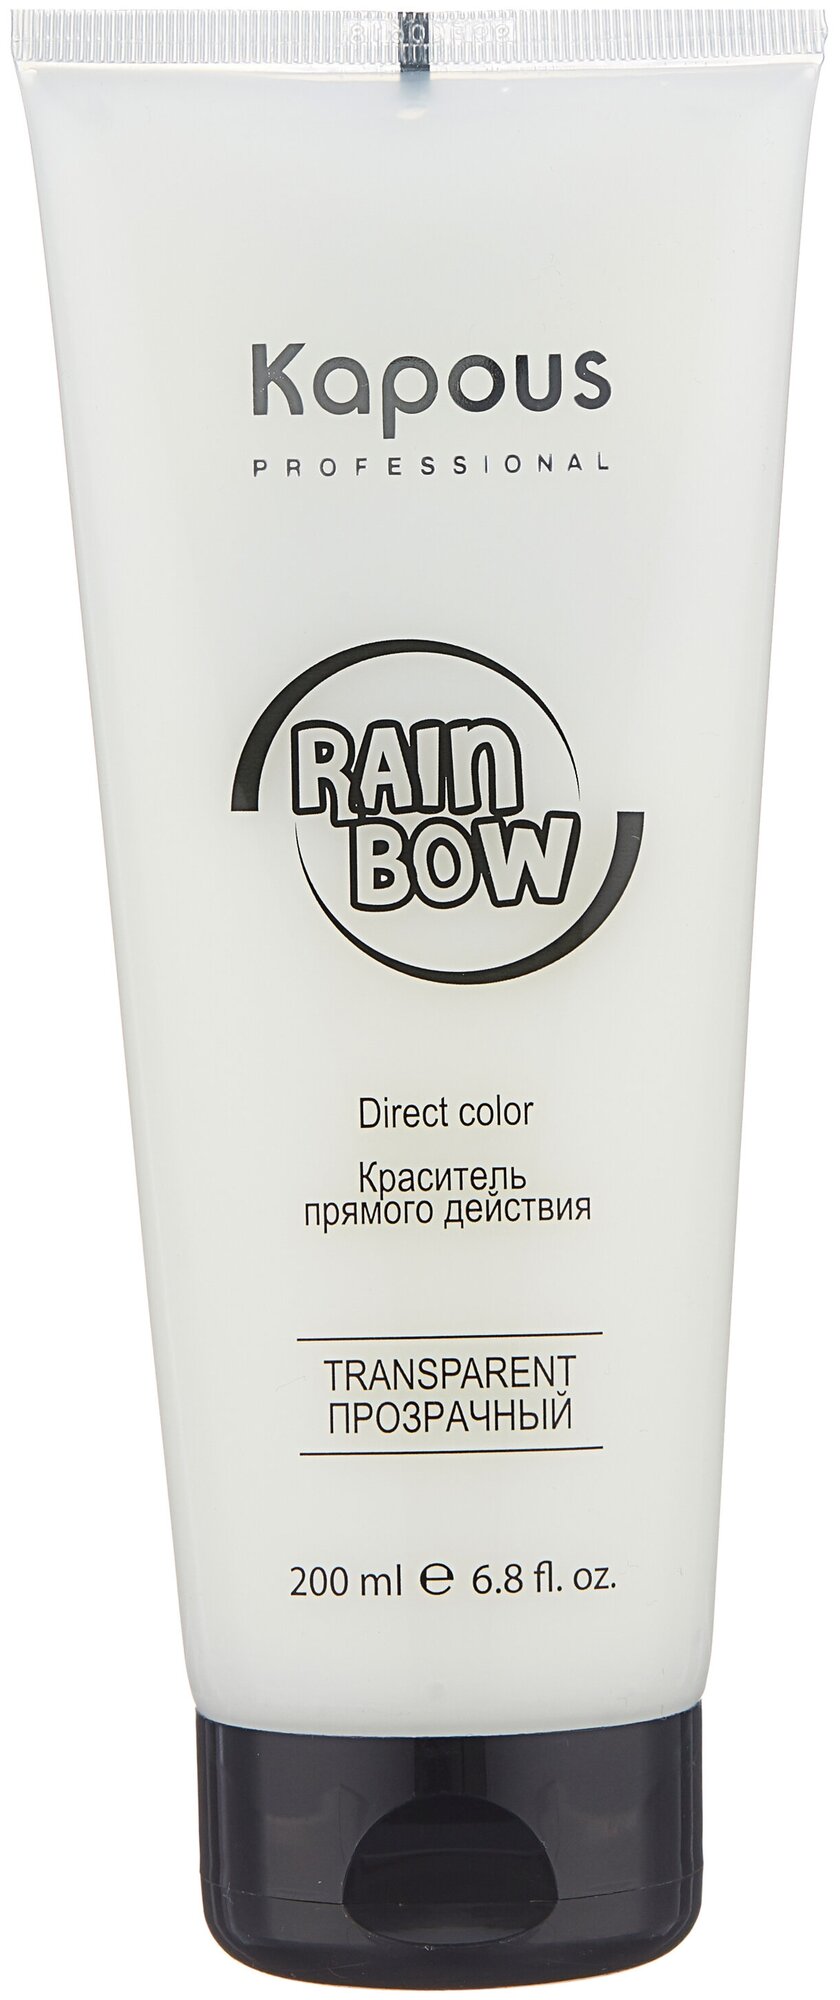 Прямой краситель RAINBOW для окрашивания волос KAPOUS PROFESSIONAL прозрачный 200 мл